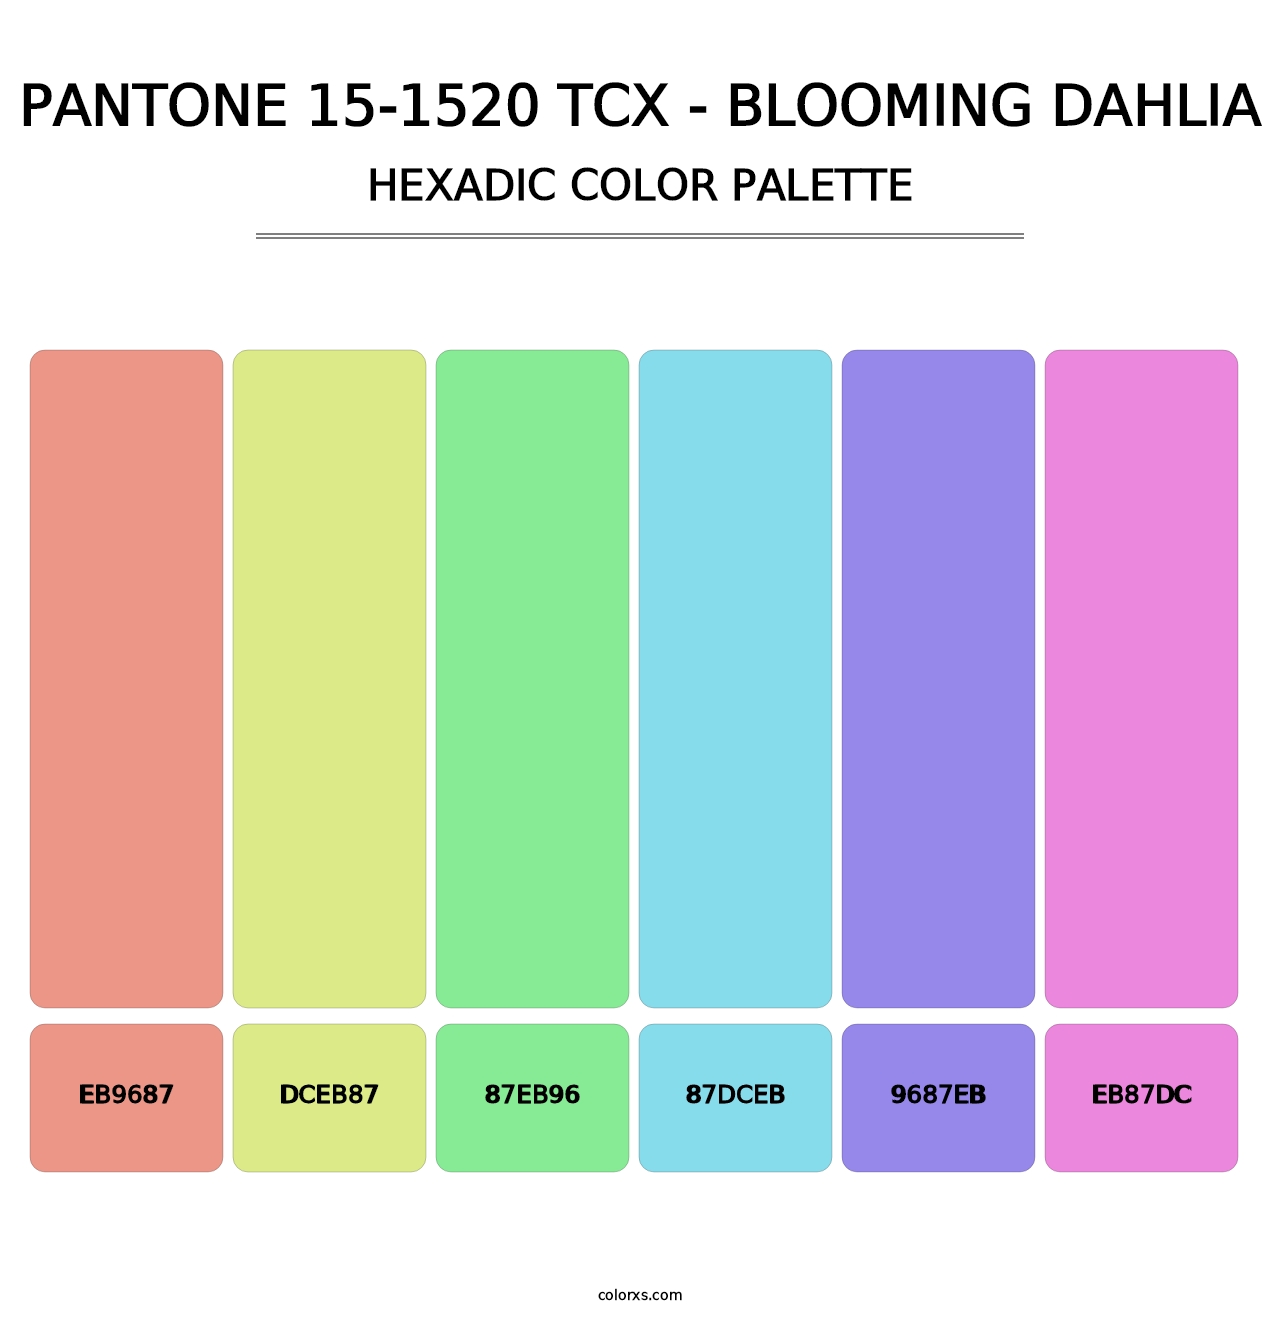 PANTONE 15-1520 TCX - Blooming Dahlia - Hexadic Color Palette